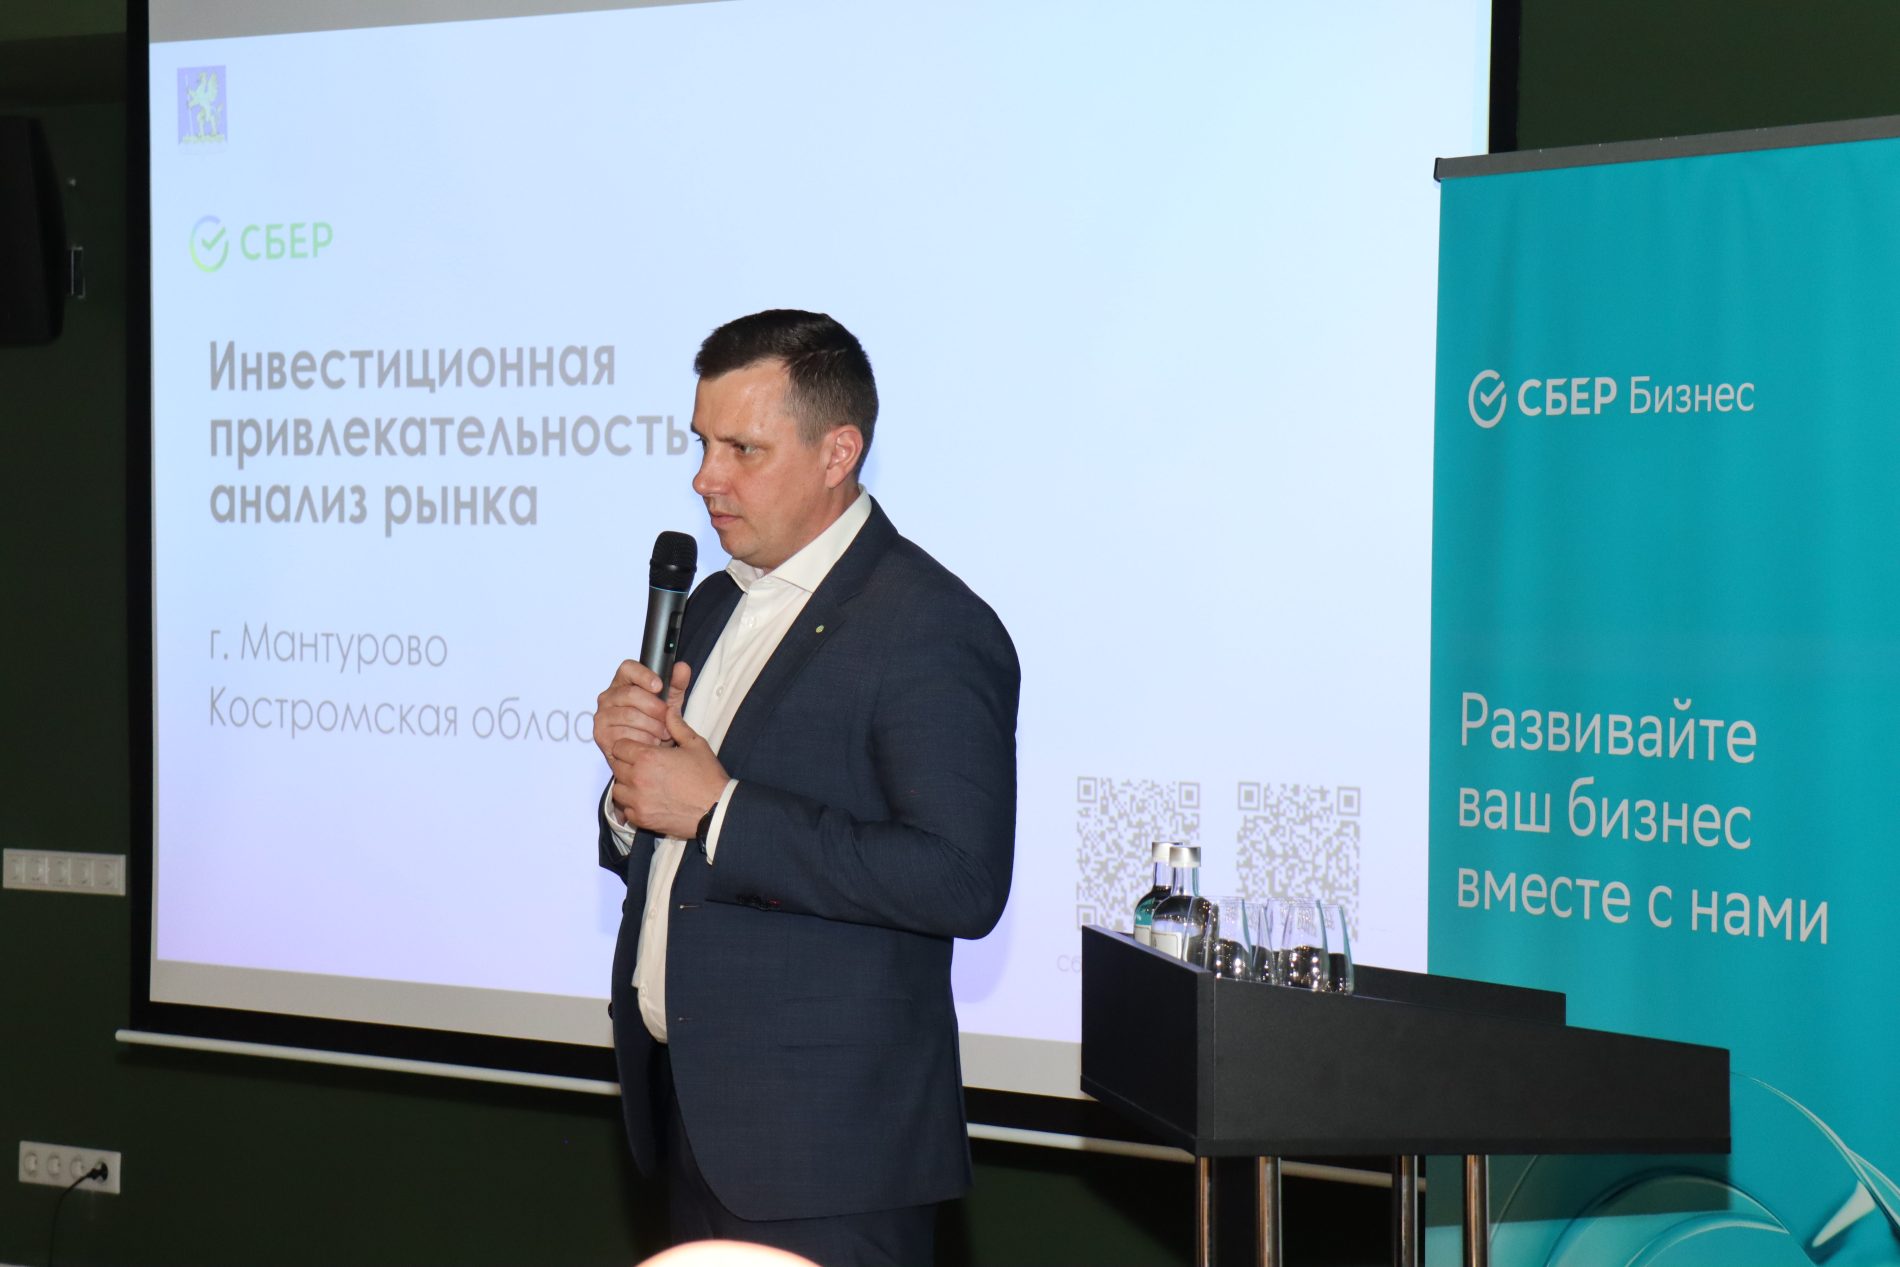 Предприниматели Костромской области обсудили инвестиционную привлекательность малых городов